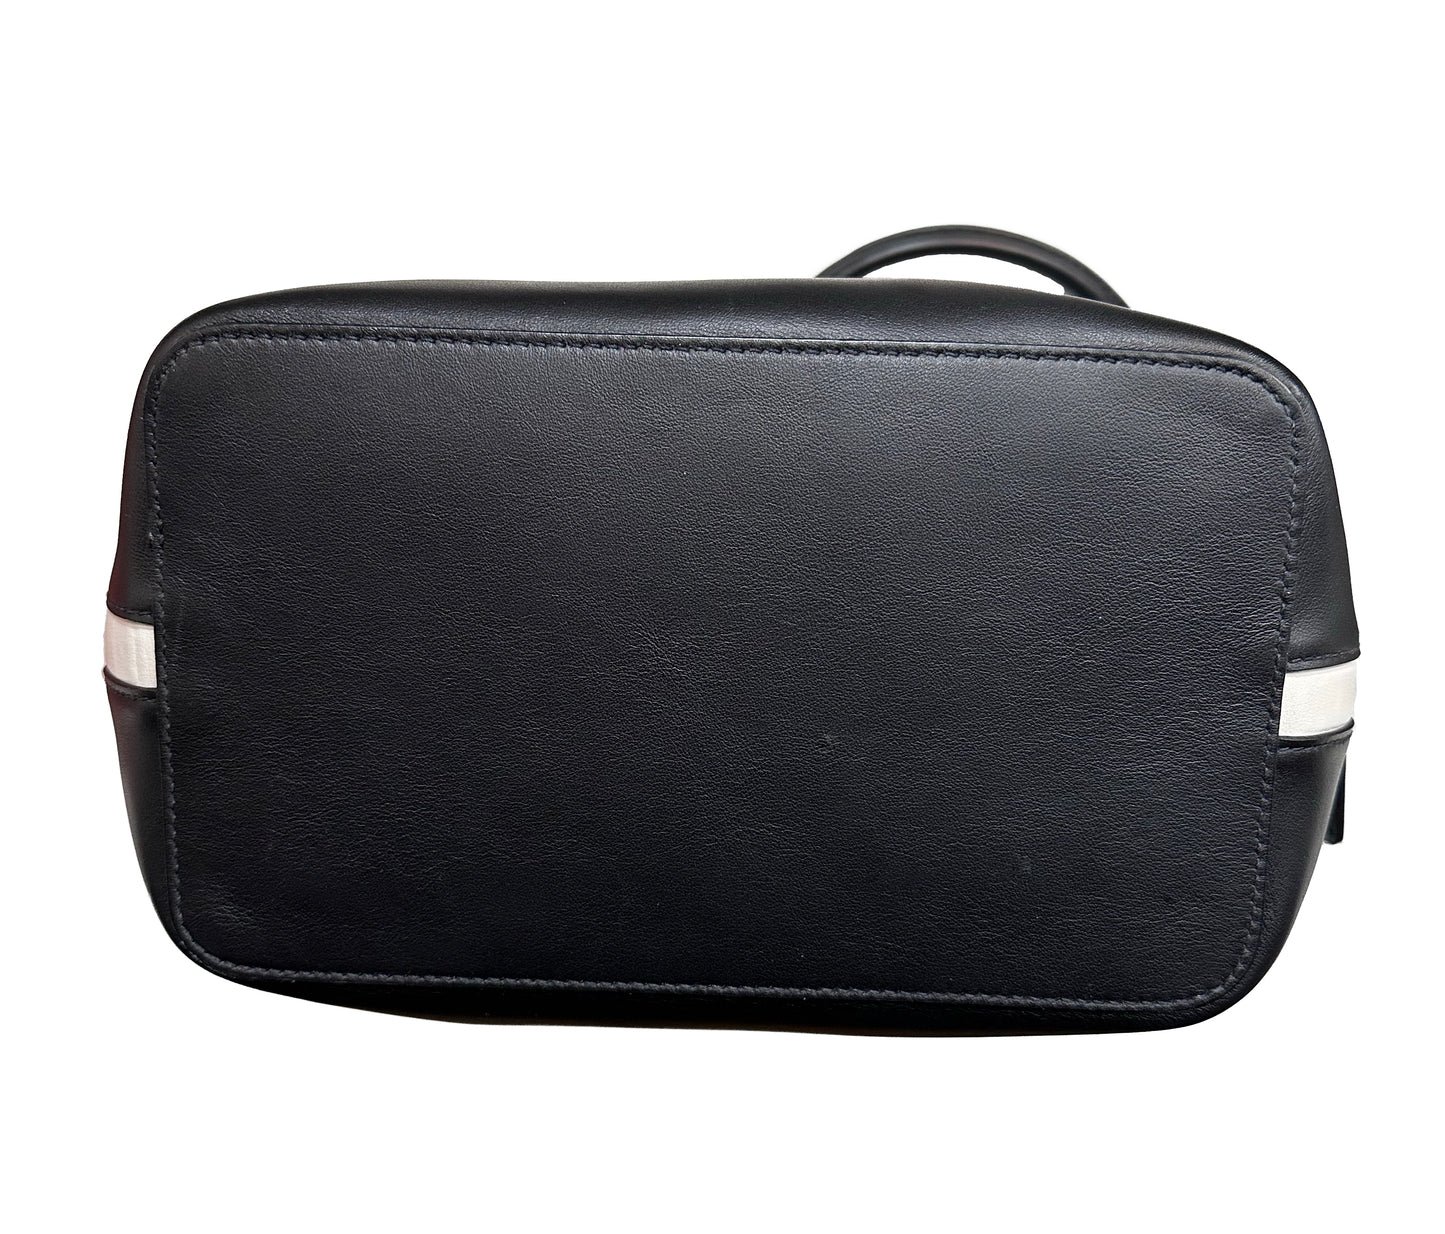 PRADA Black Leather Shoulder Bag